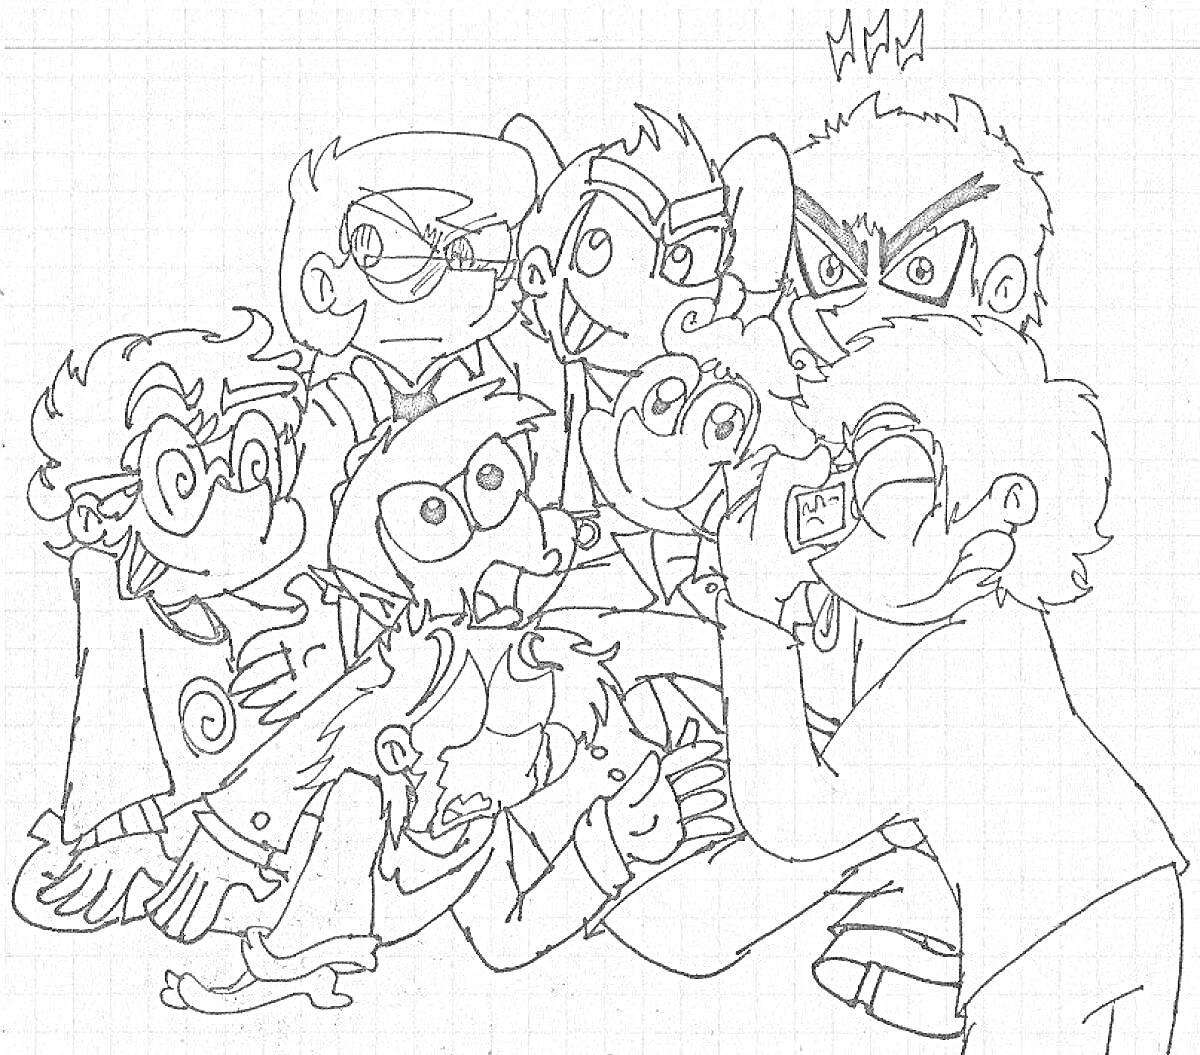 Раскраска Карикатура на тему вару, группа персонажей с разными гримасами и эмоциями